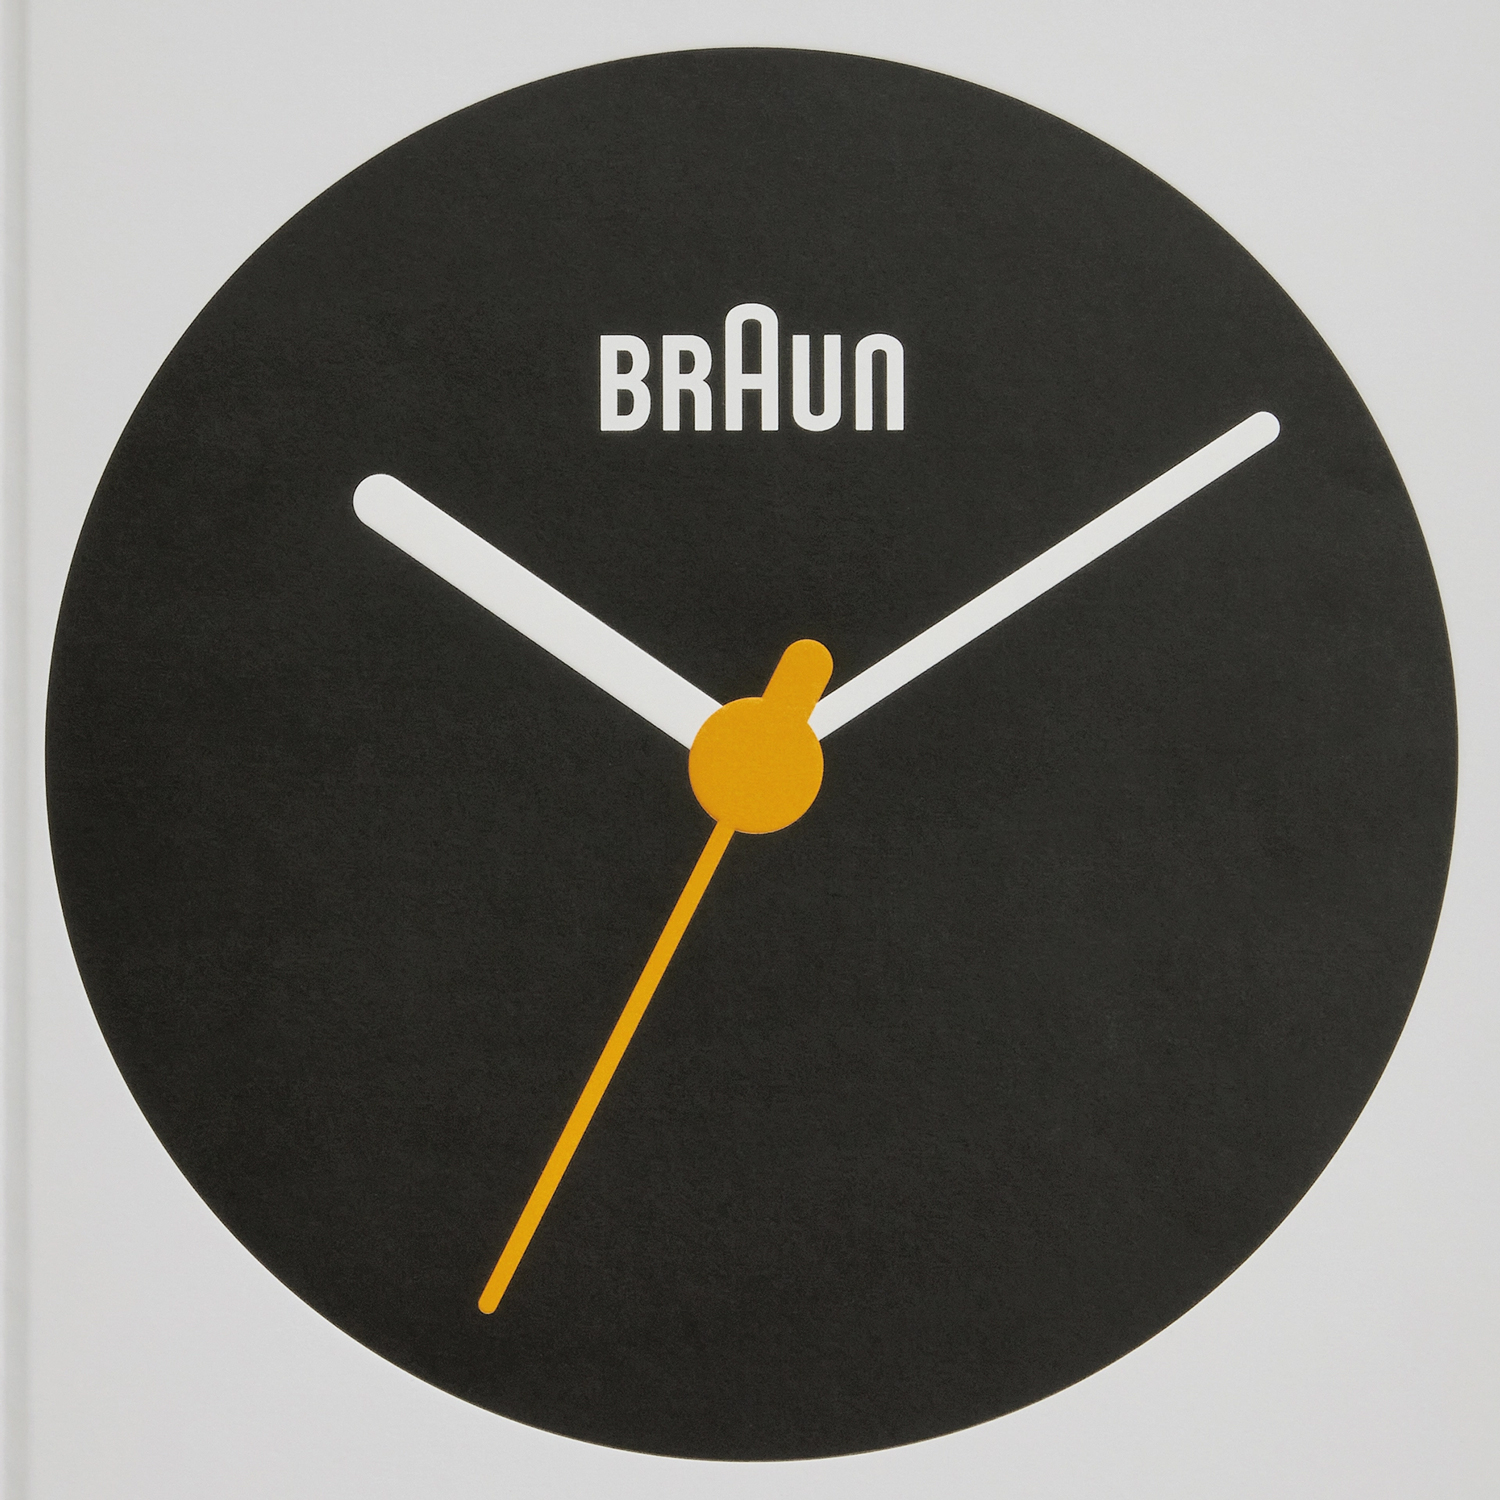 Immagine di Braun: Progettato per durare